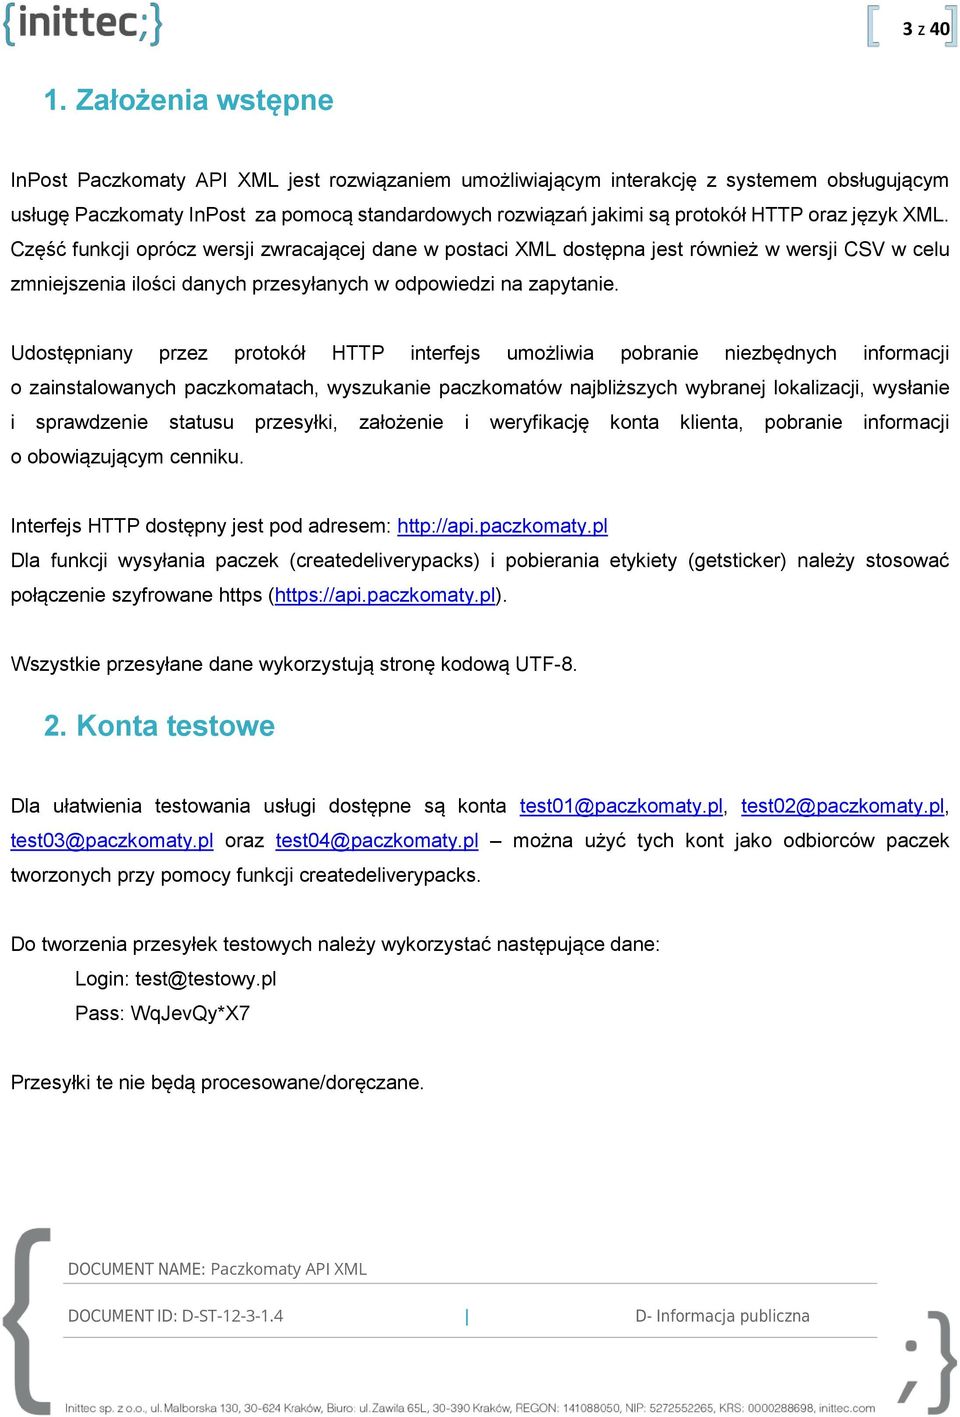 Paczkomaty API XML D-ST D - Informacja publiczna DOCUMENT ID: - PDF Free  Download